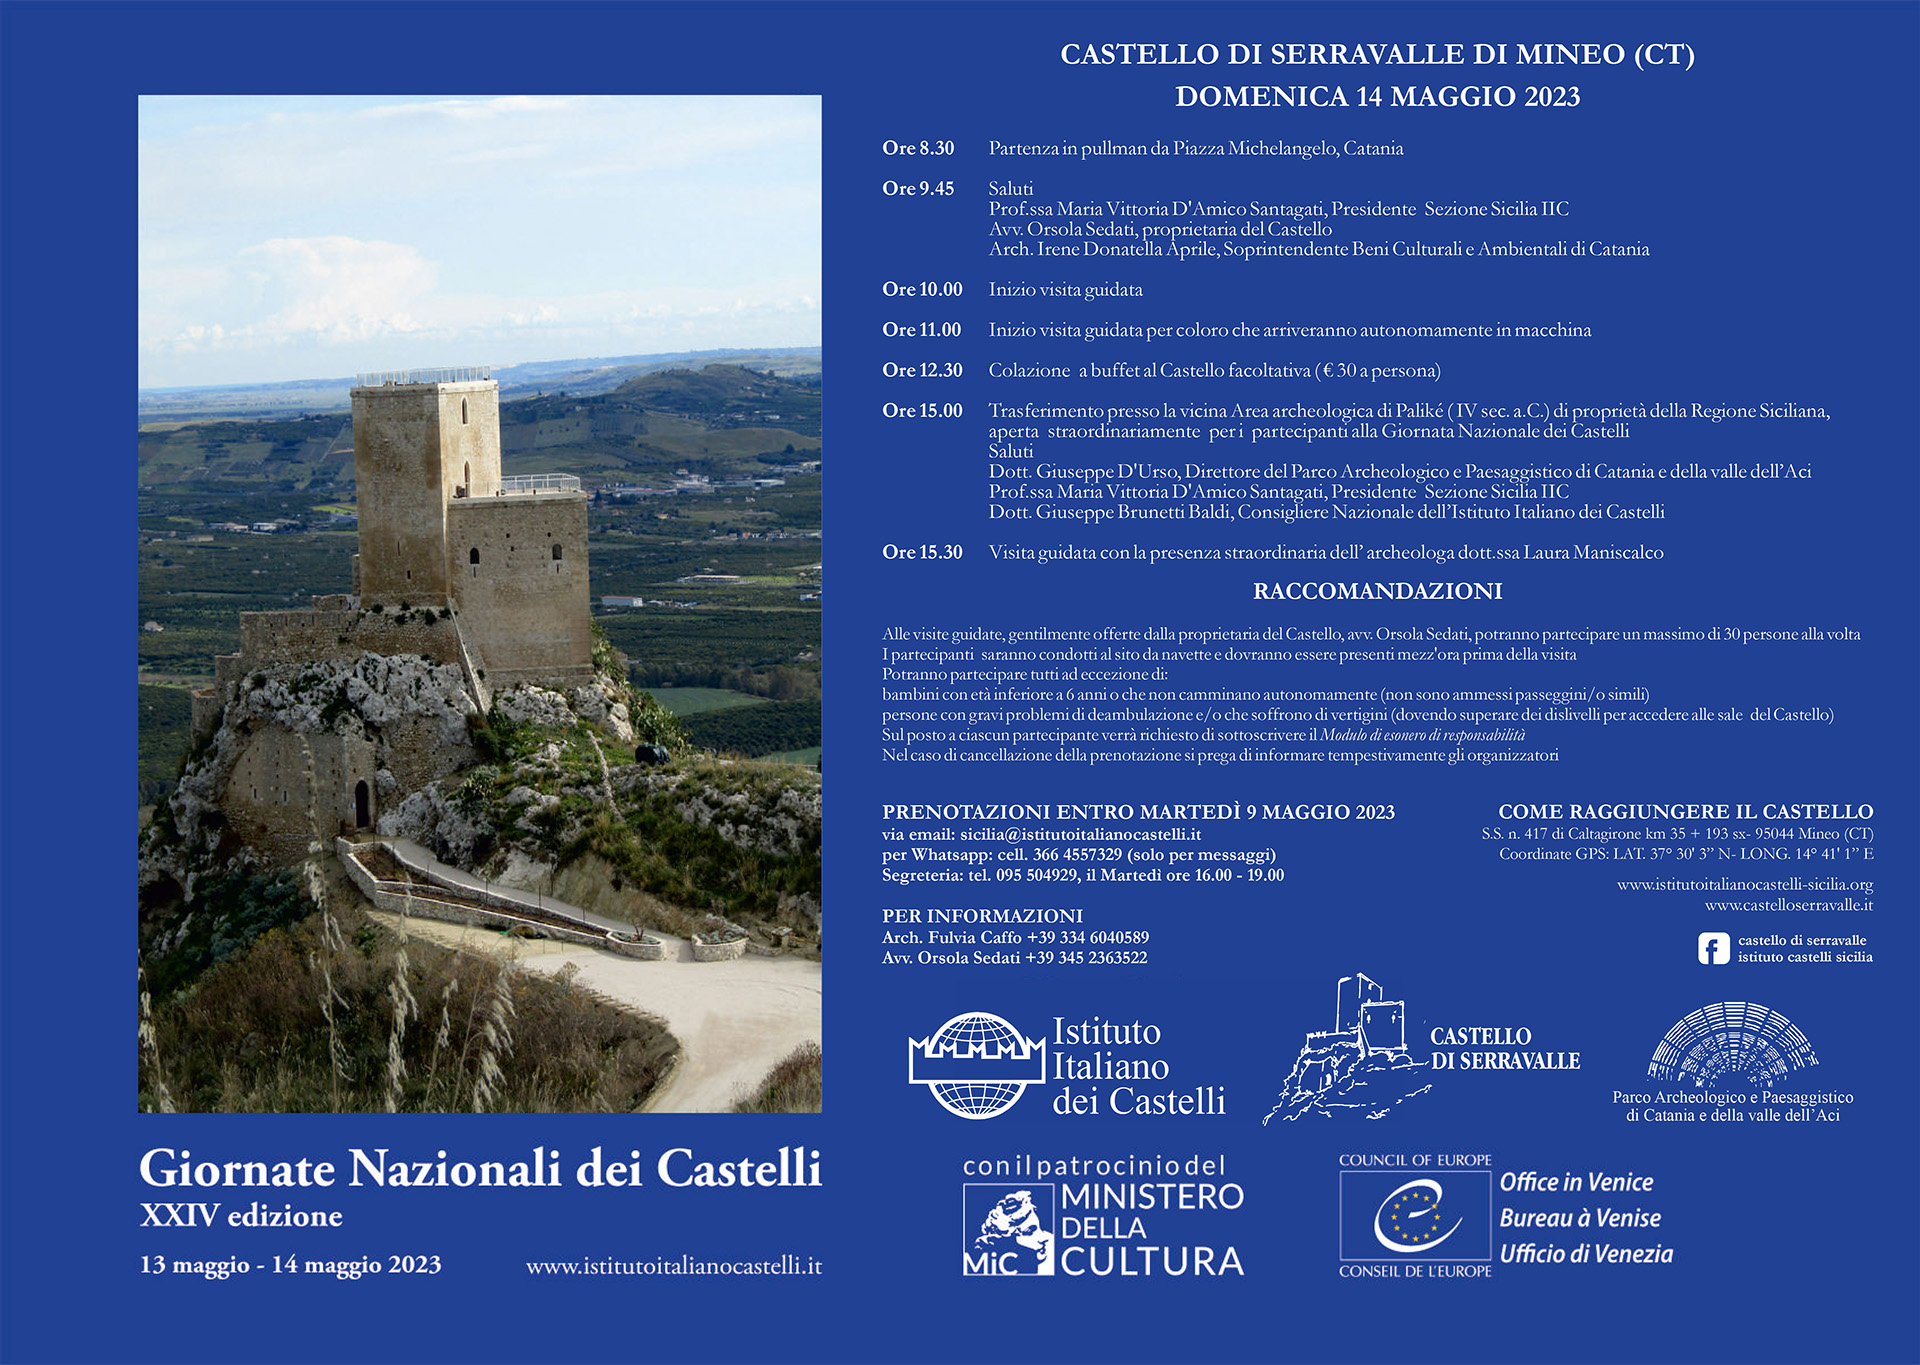 Giornate Nazionali dei Castelli 2023 – Castello di Serravalle (Mineo -CT)